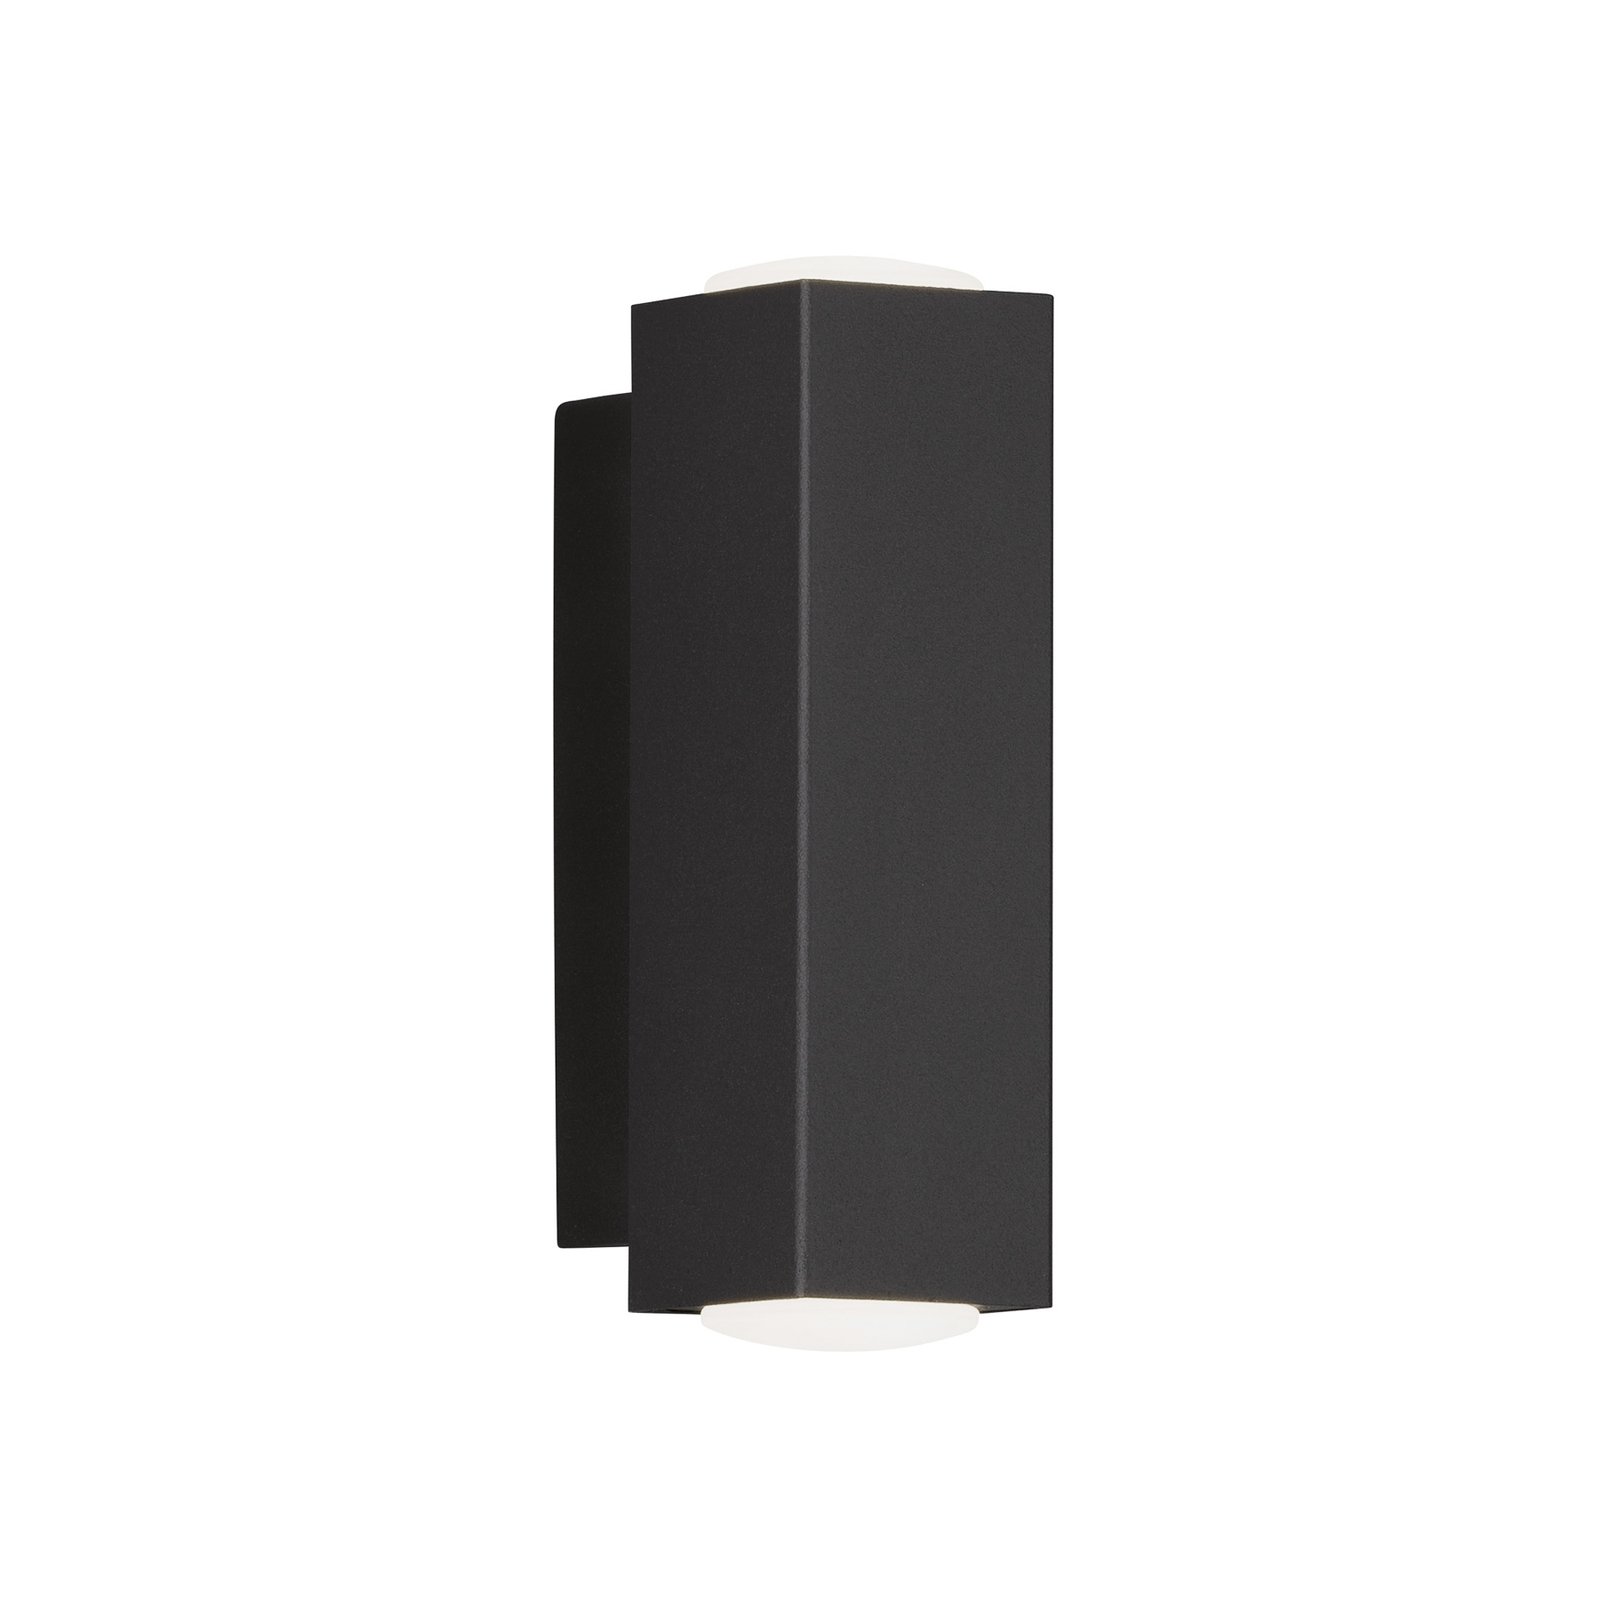 LED-vägglampa Carlo, fyrkantig form, upp/ner svart